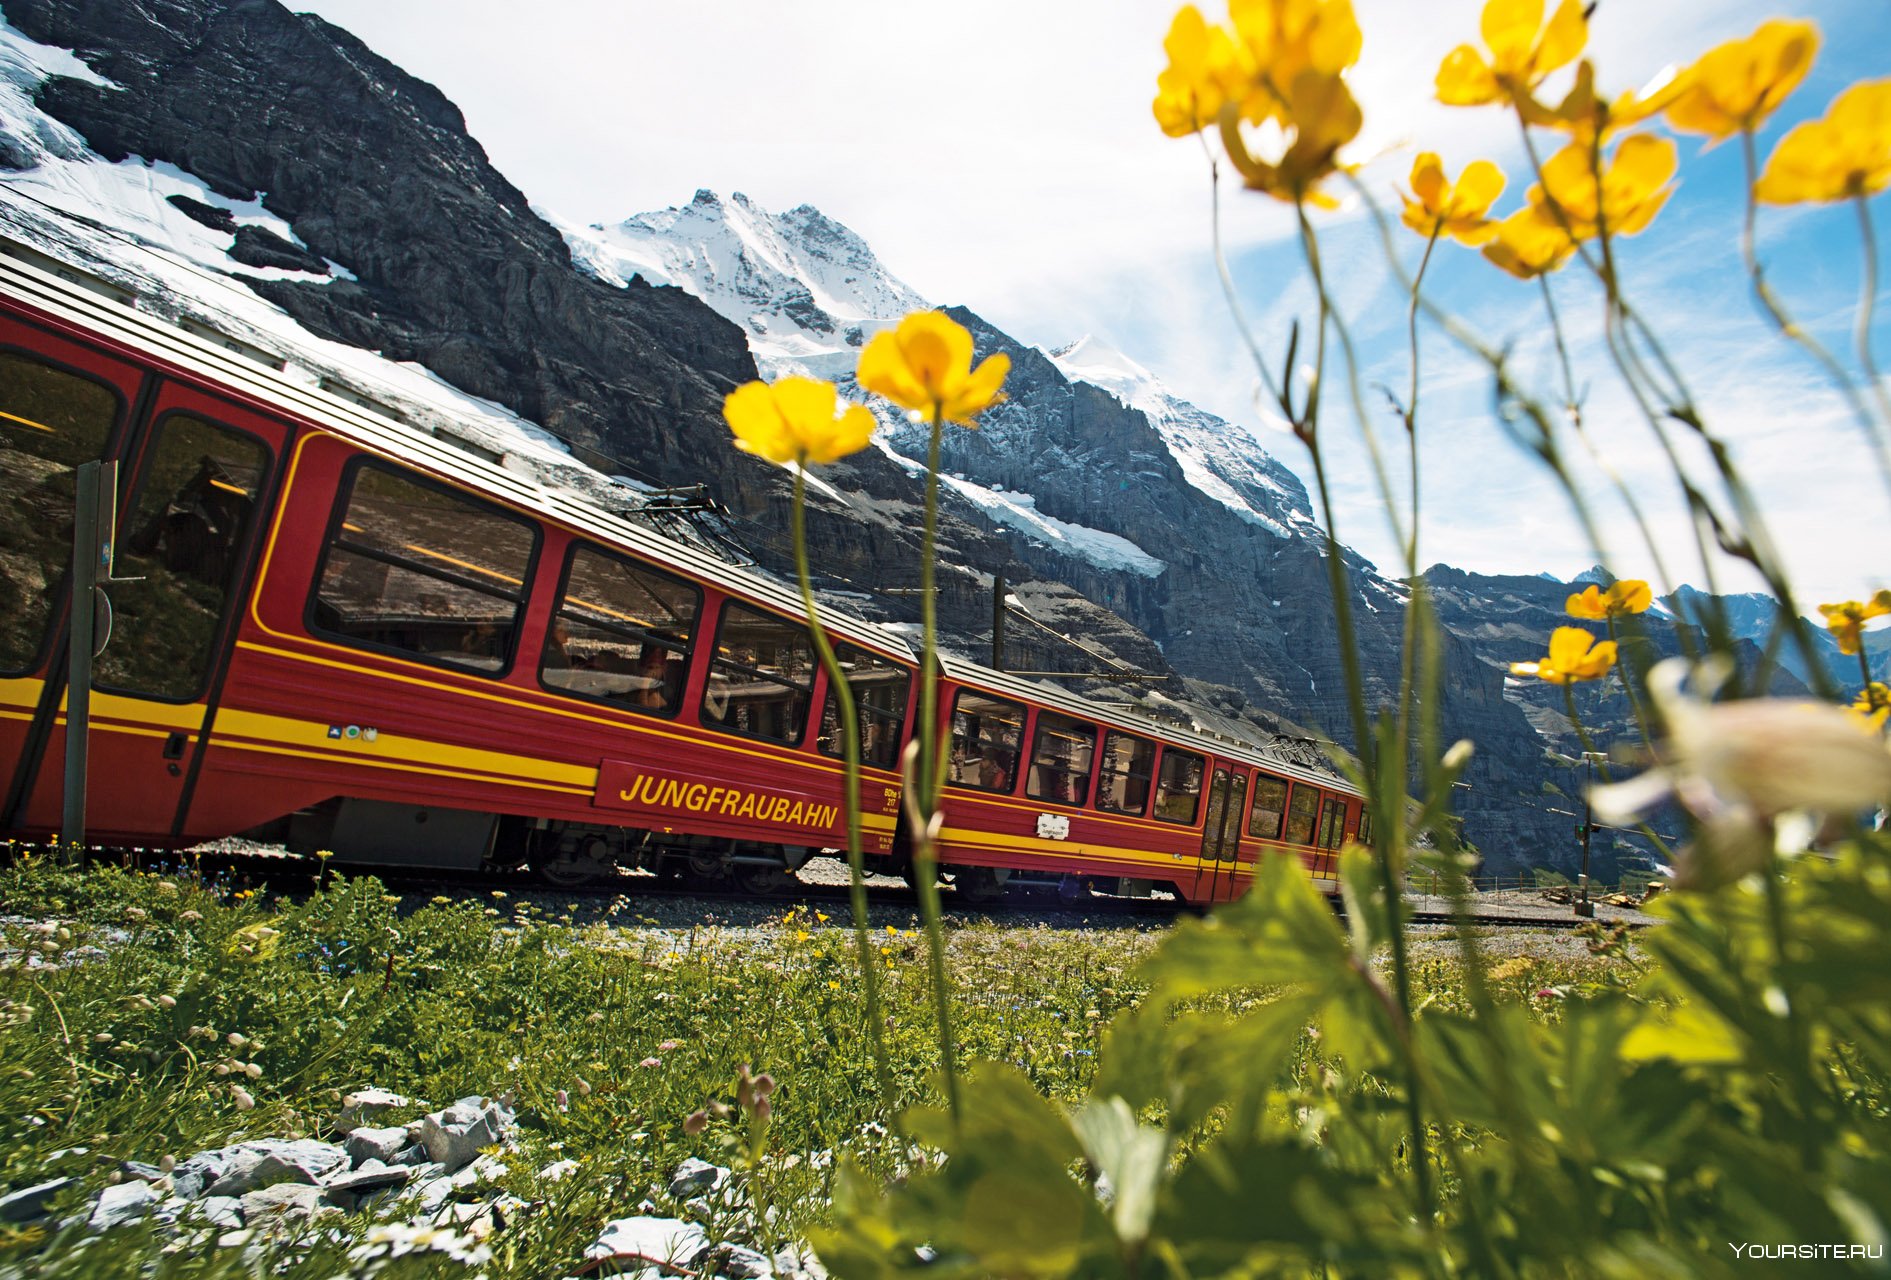 Жд тур на поезде. Юнгфрау (железная дорога). Железнодорожный вокзал юнгфрауйохюнгфрауйох, Швейцария. Швейцарская Jungfraubahn. Путешествие на поезде.